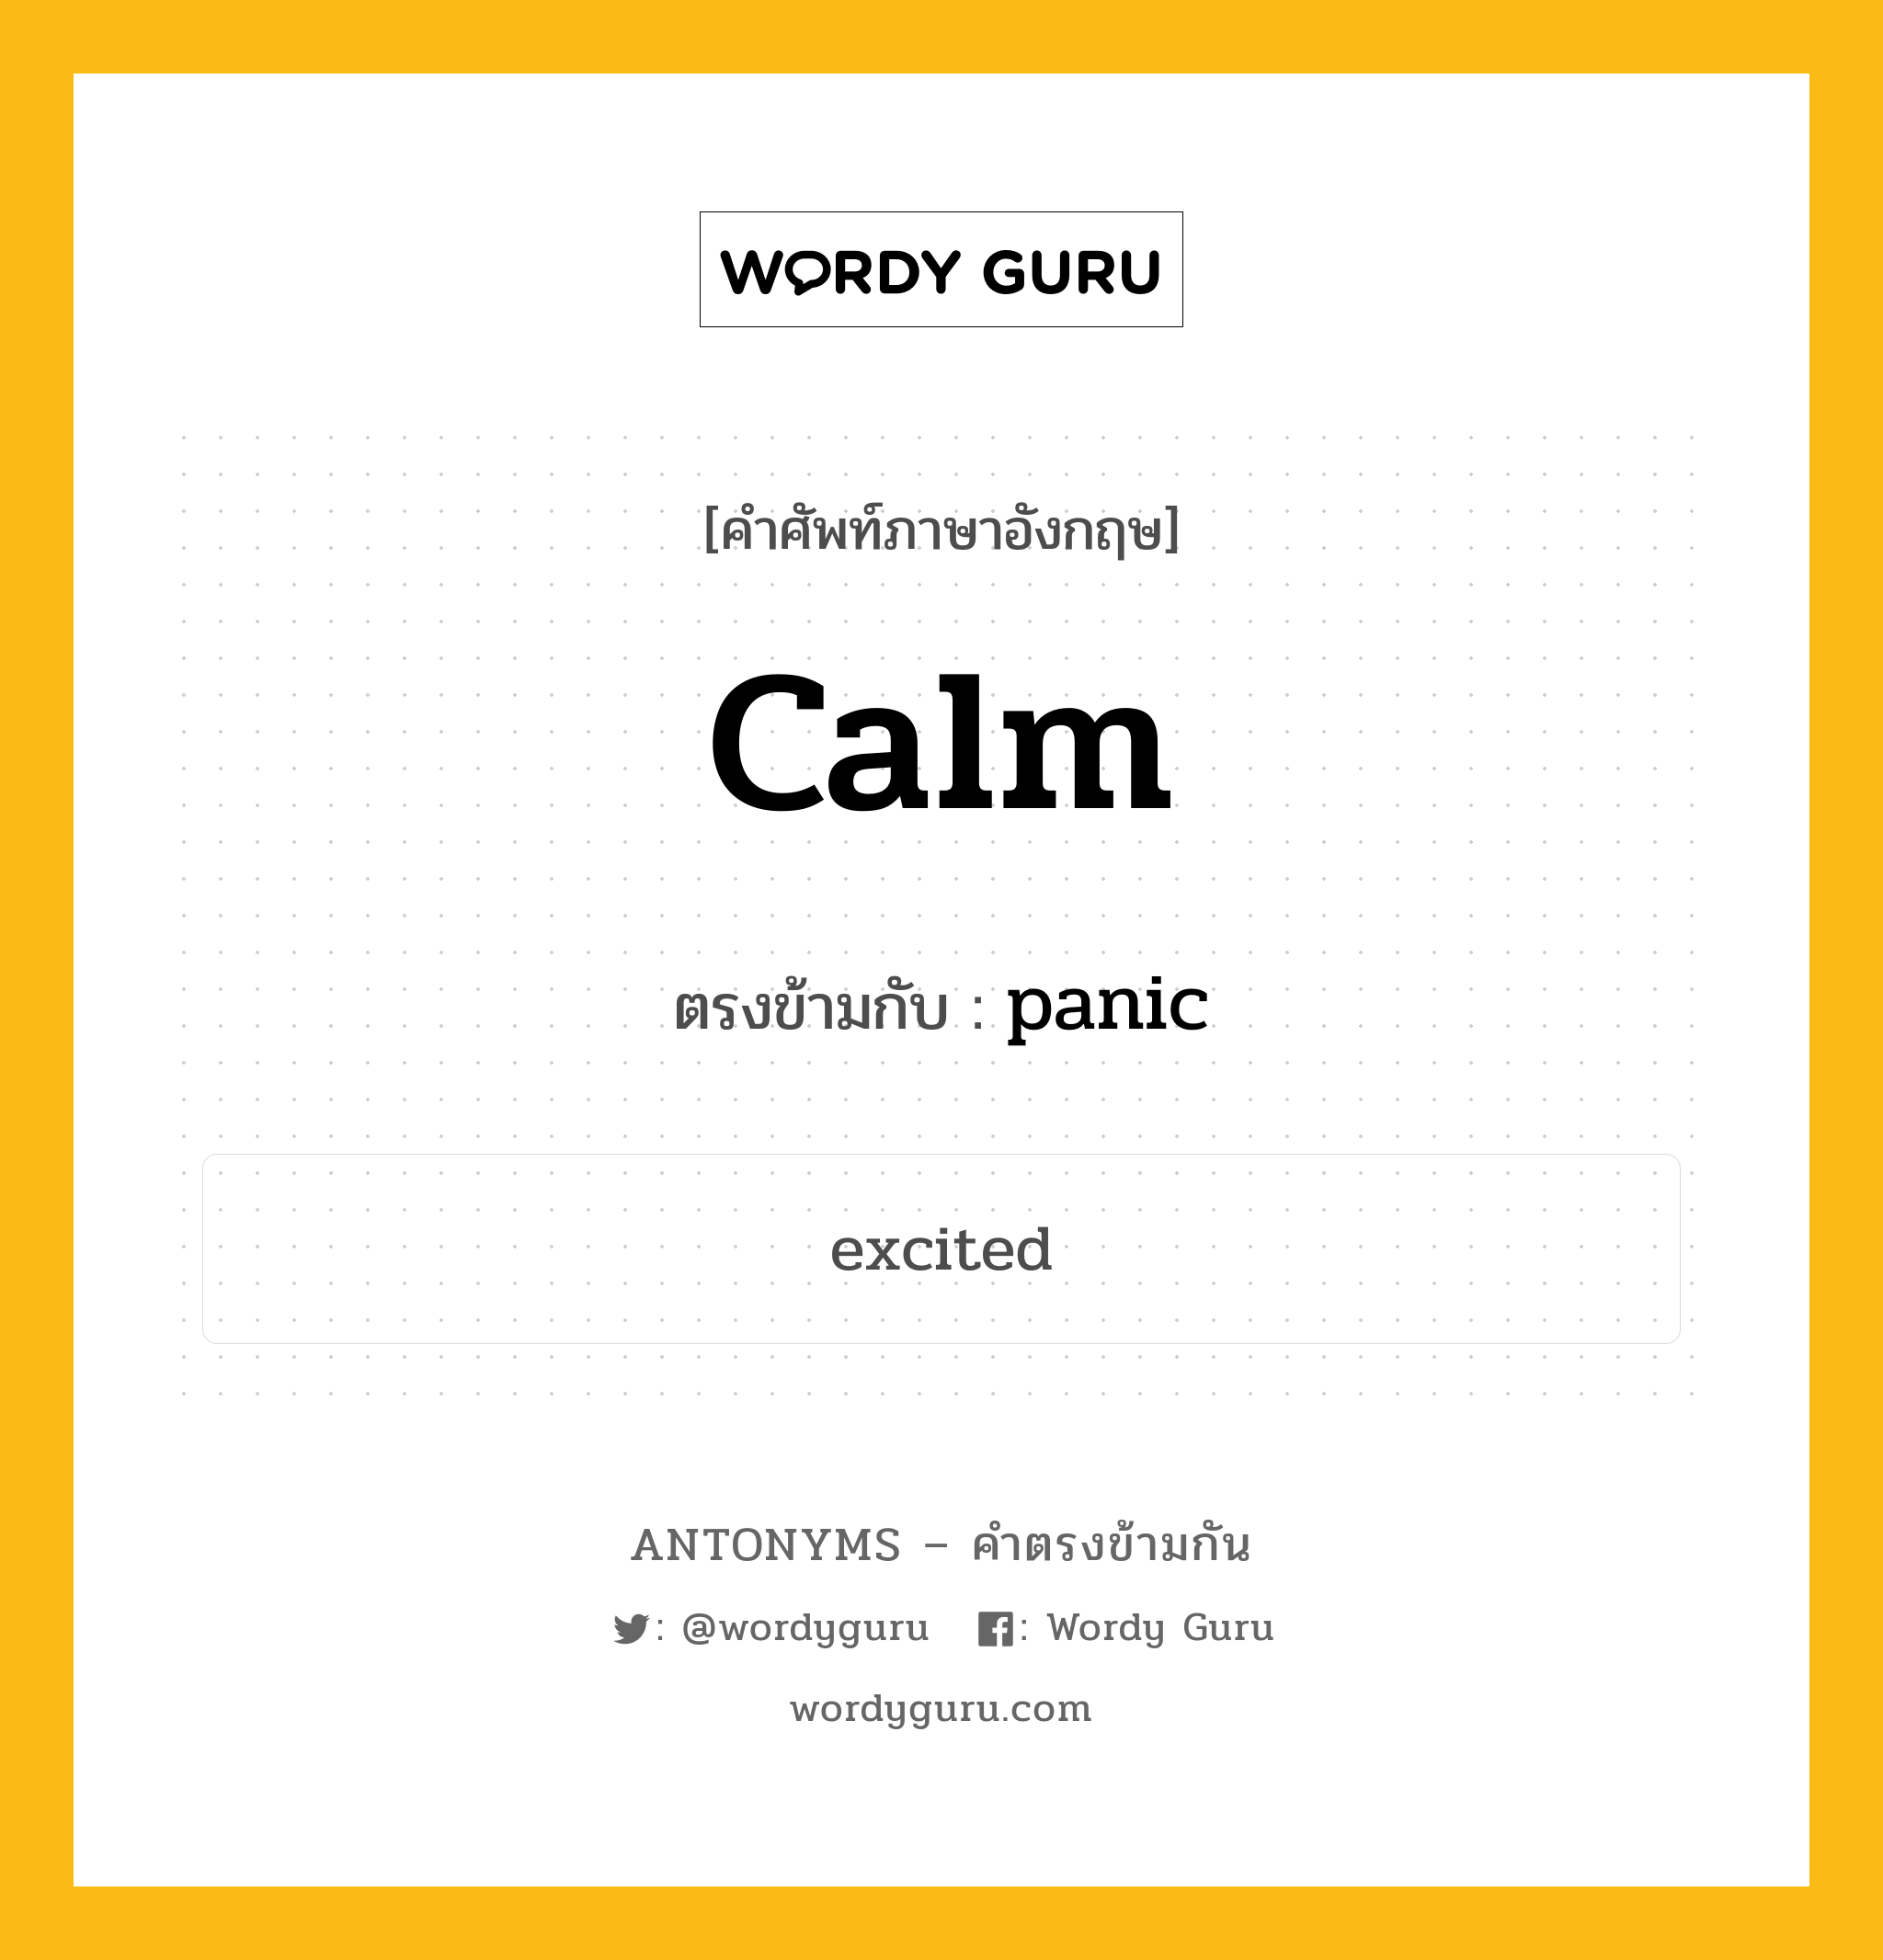 calm เป็นคำตรงข้ามกับคำไหนบ้าง?, คำศัพท์ภาษาอังกฤษ calm ตรงข้ามกับ panic หมวด panic